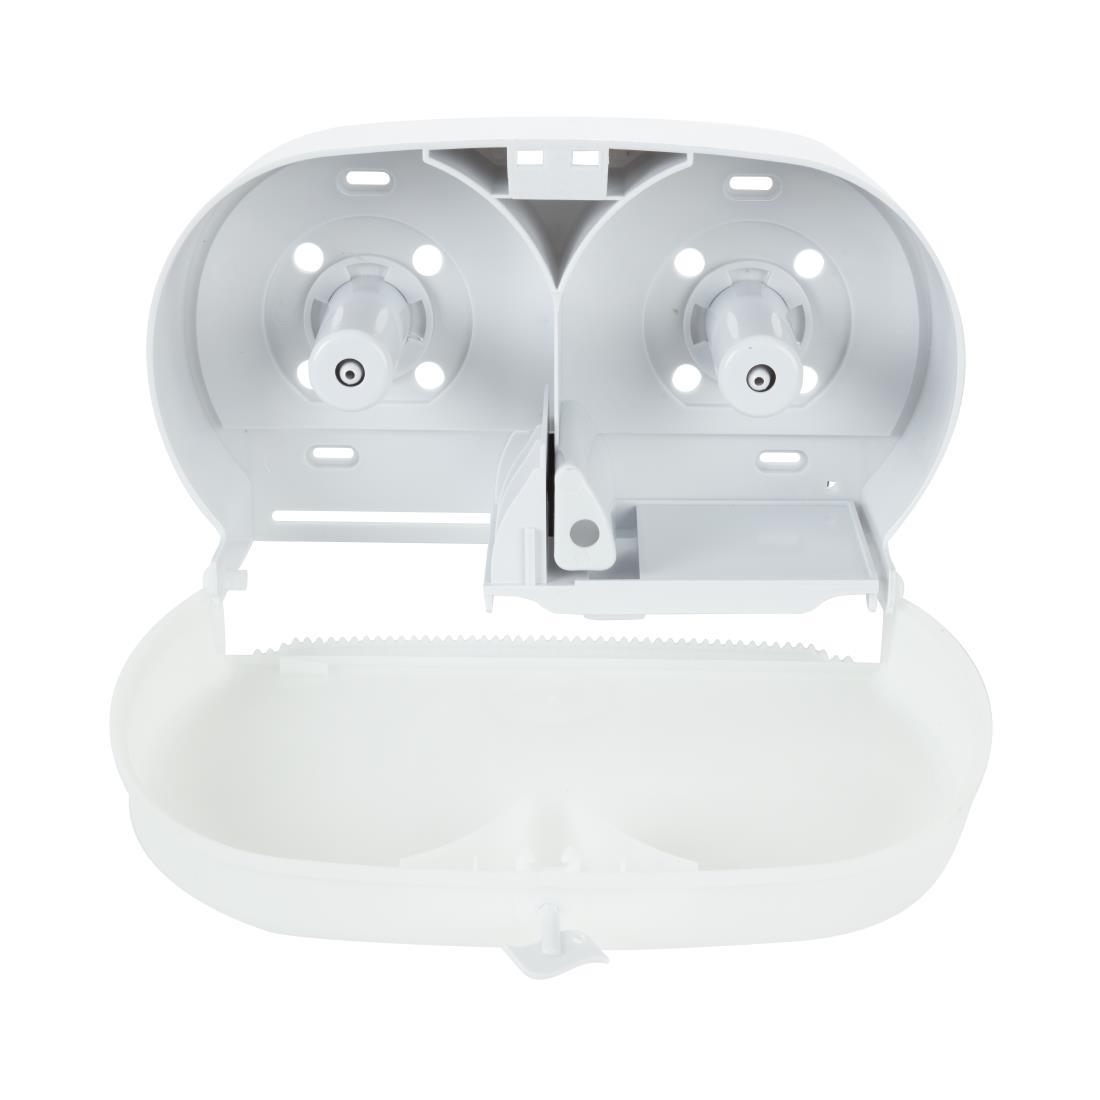 Jantex Micro Twin Toilet Roll Dispenser - GL062  - 3